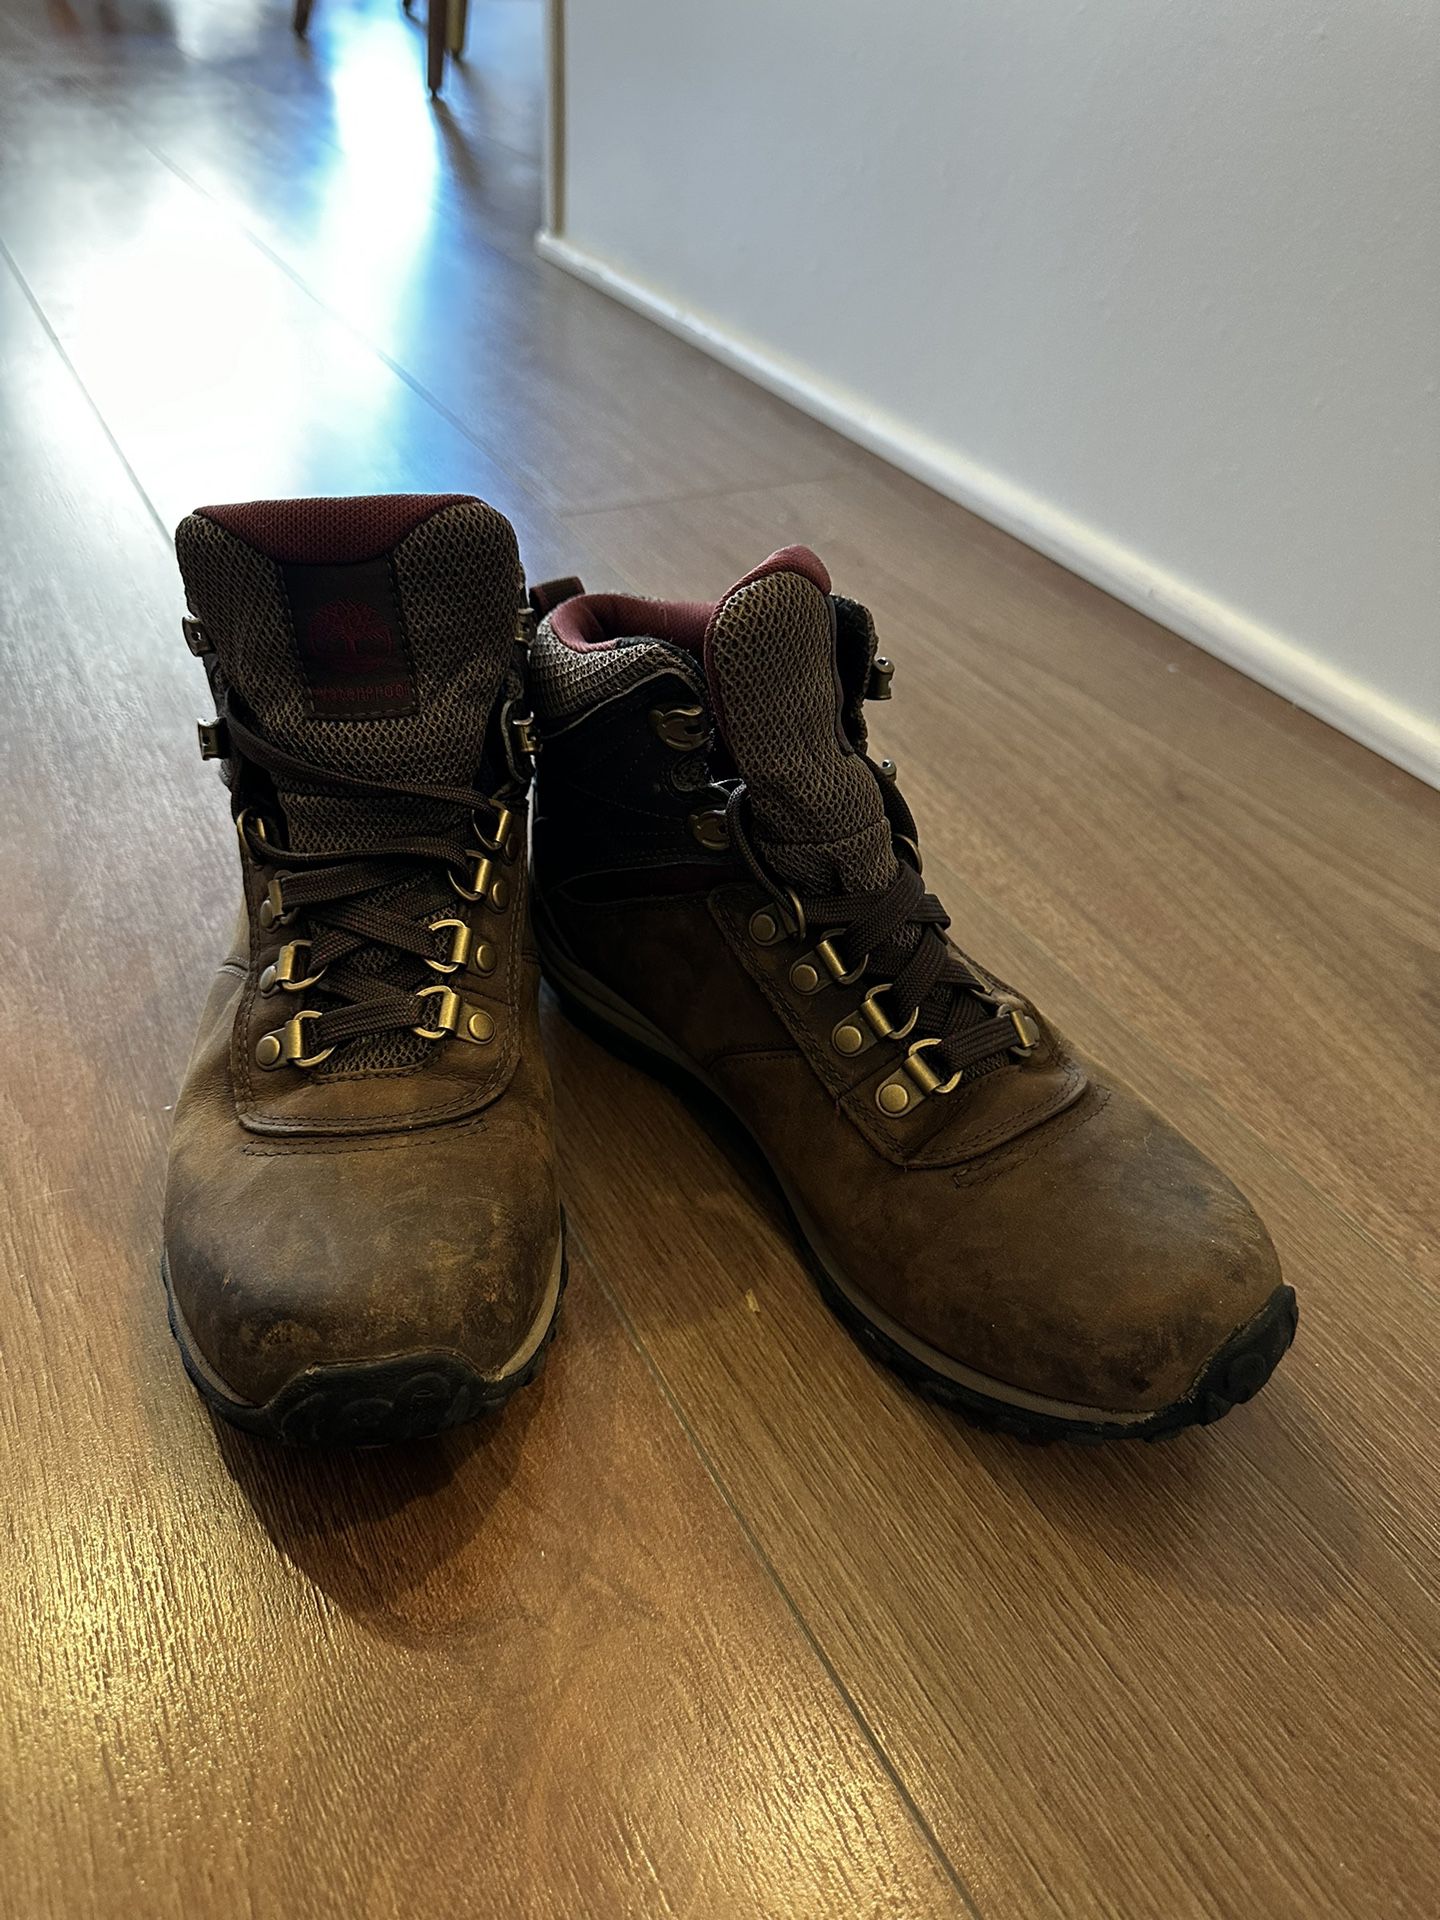 Women Timberland Hiking Boots Size 7 - Like New